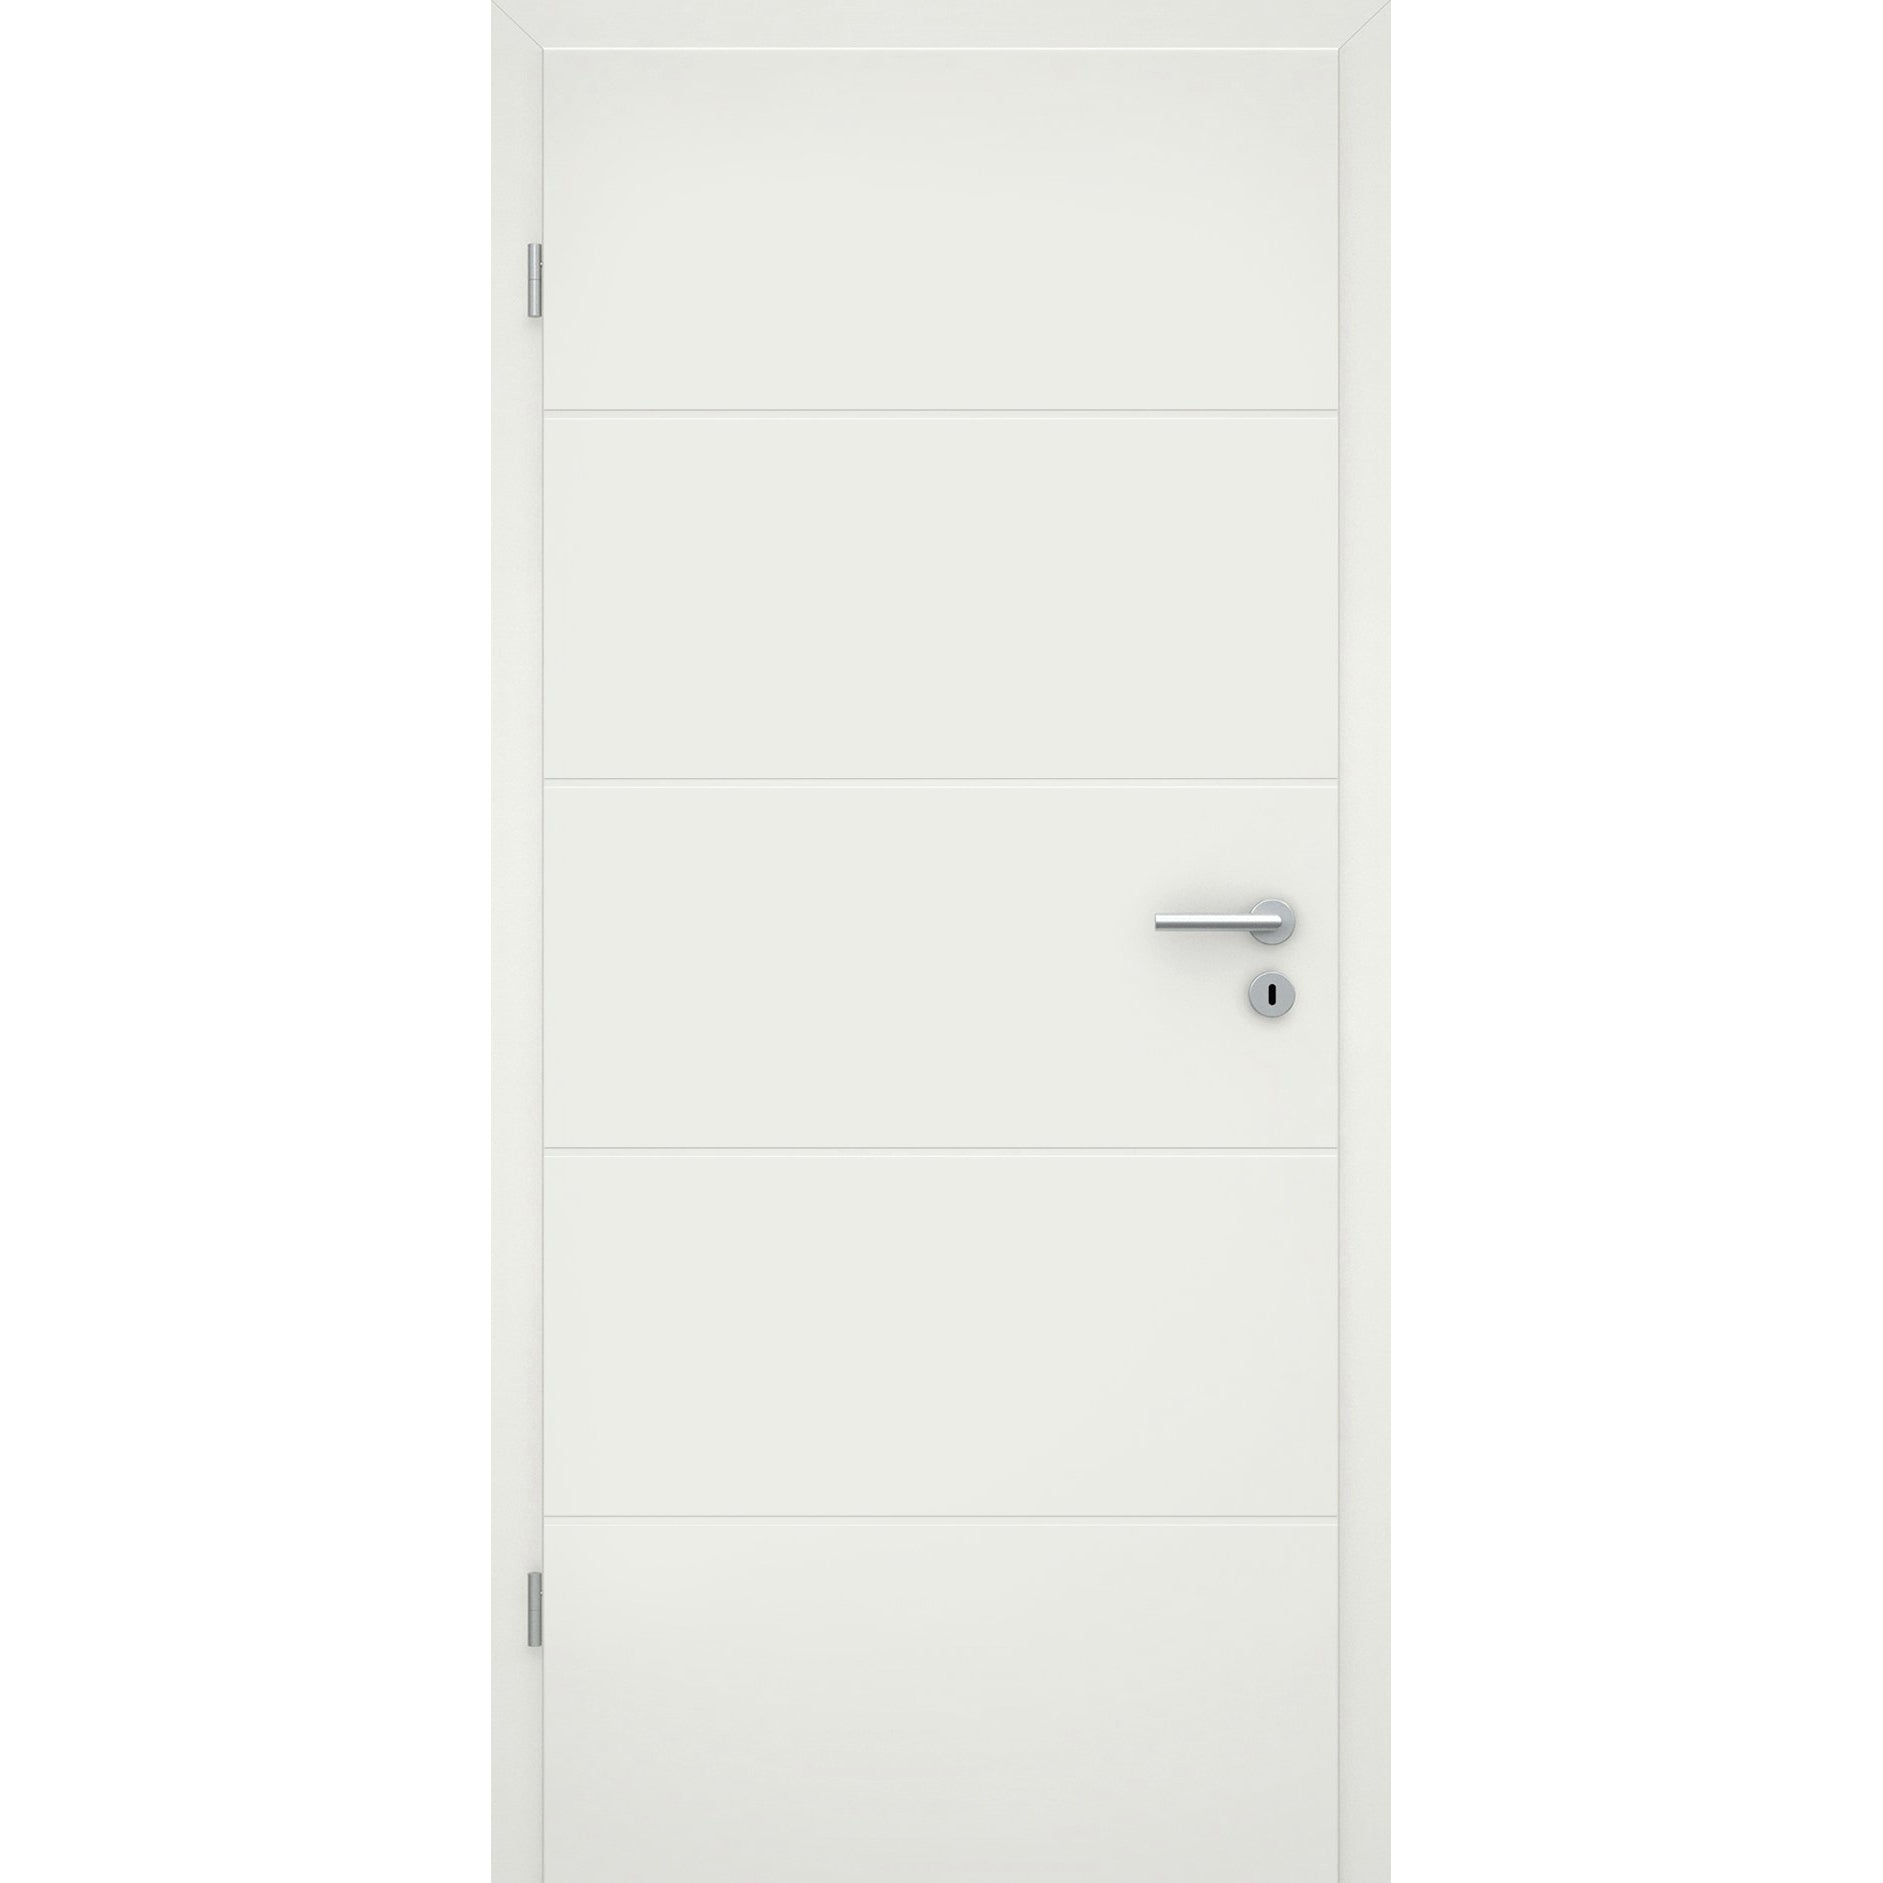 Wohnungseingangstür soft-weiß 4 Rillen Eckkante SK2 / KK3 - Modell Designtür Q41